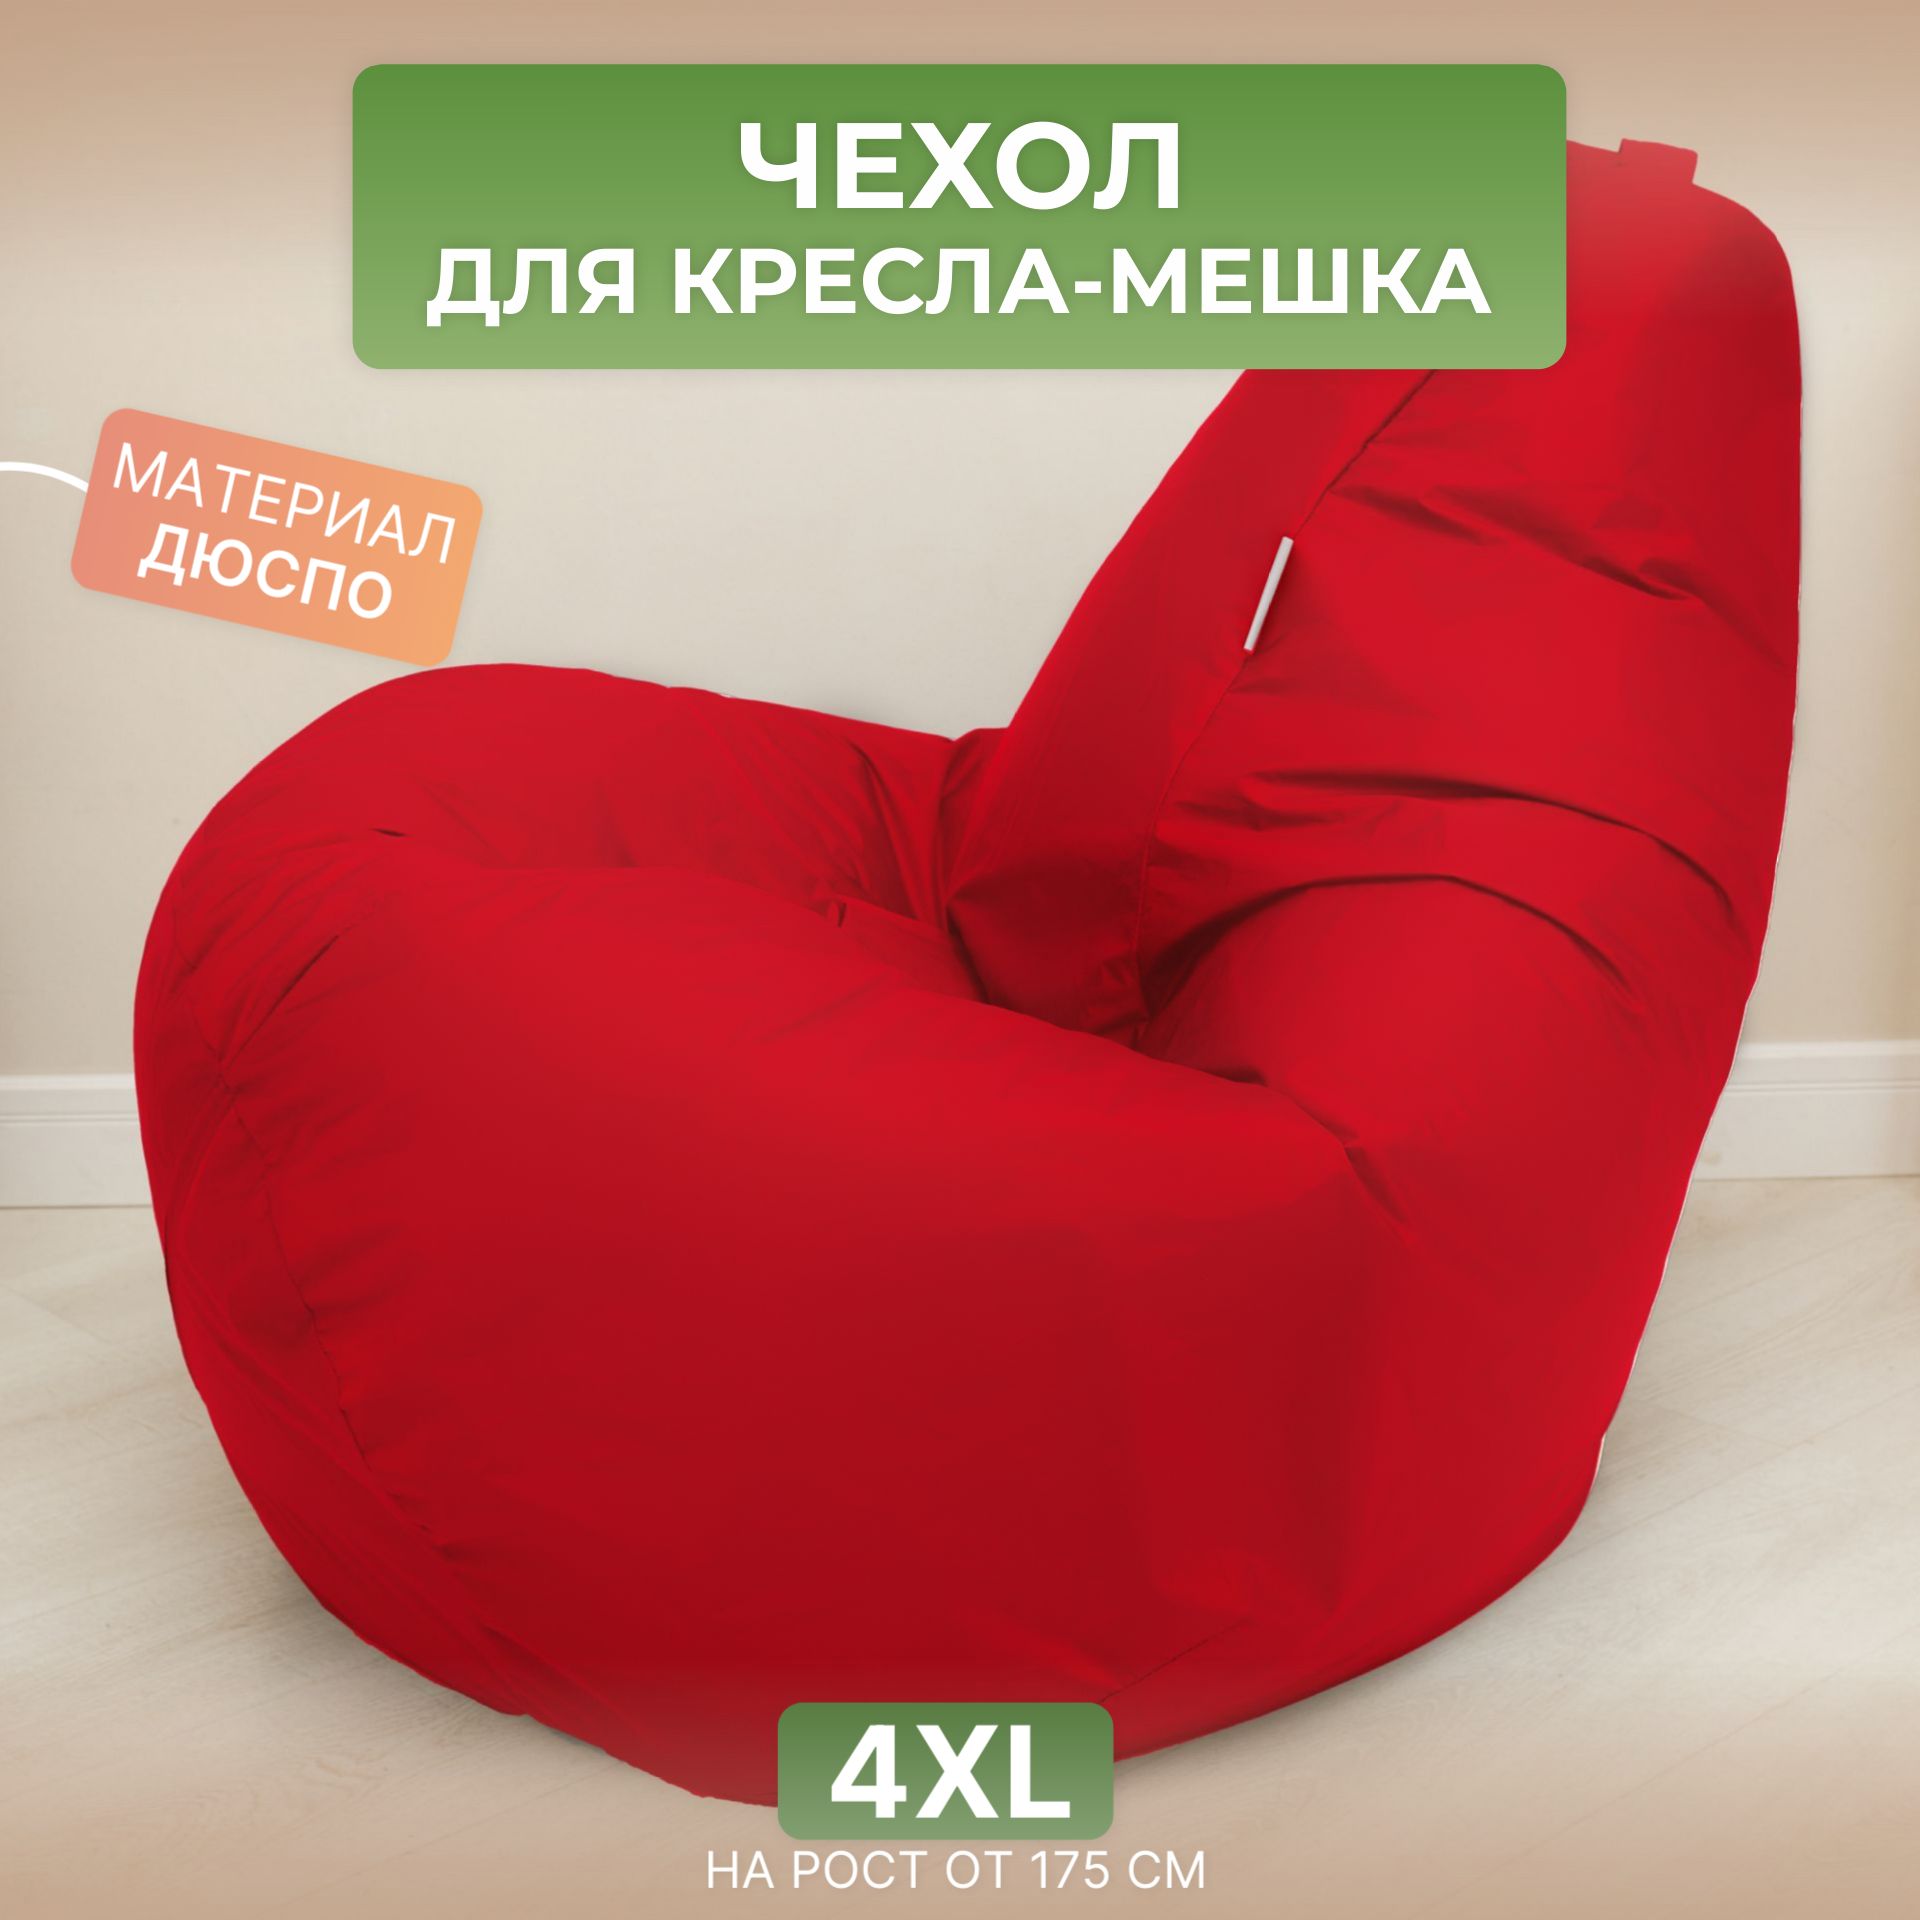 Чехол для кресла-мешка Divan Груша 4XL красный